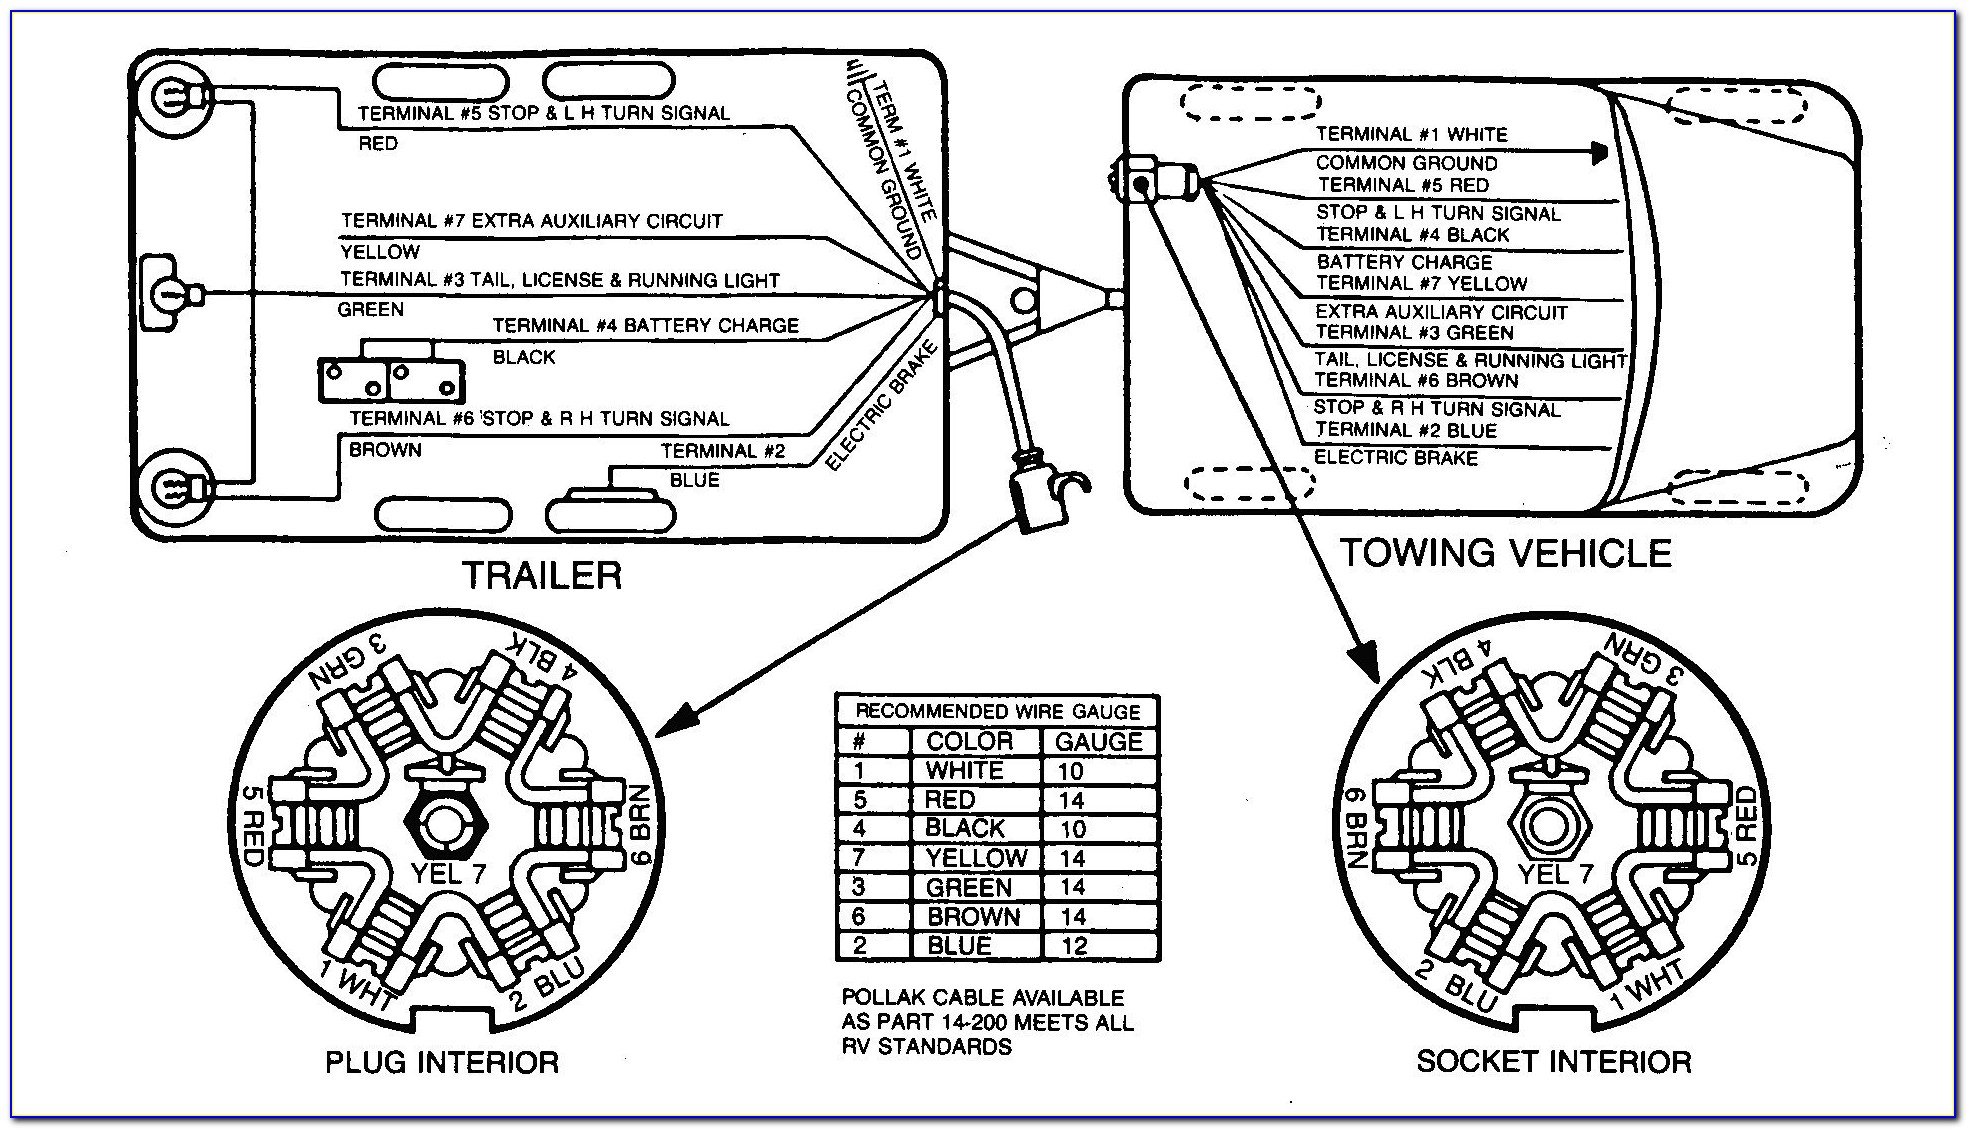 Seven Wire Trailer Plug Diagram